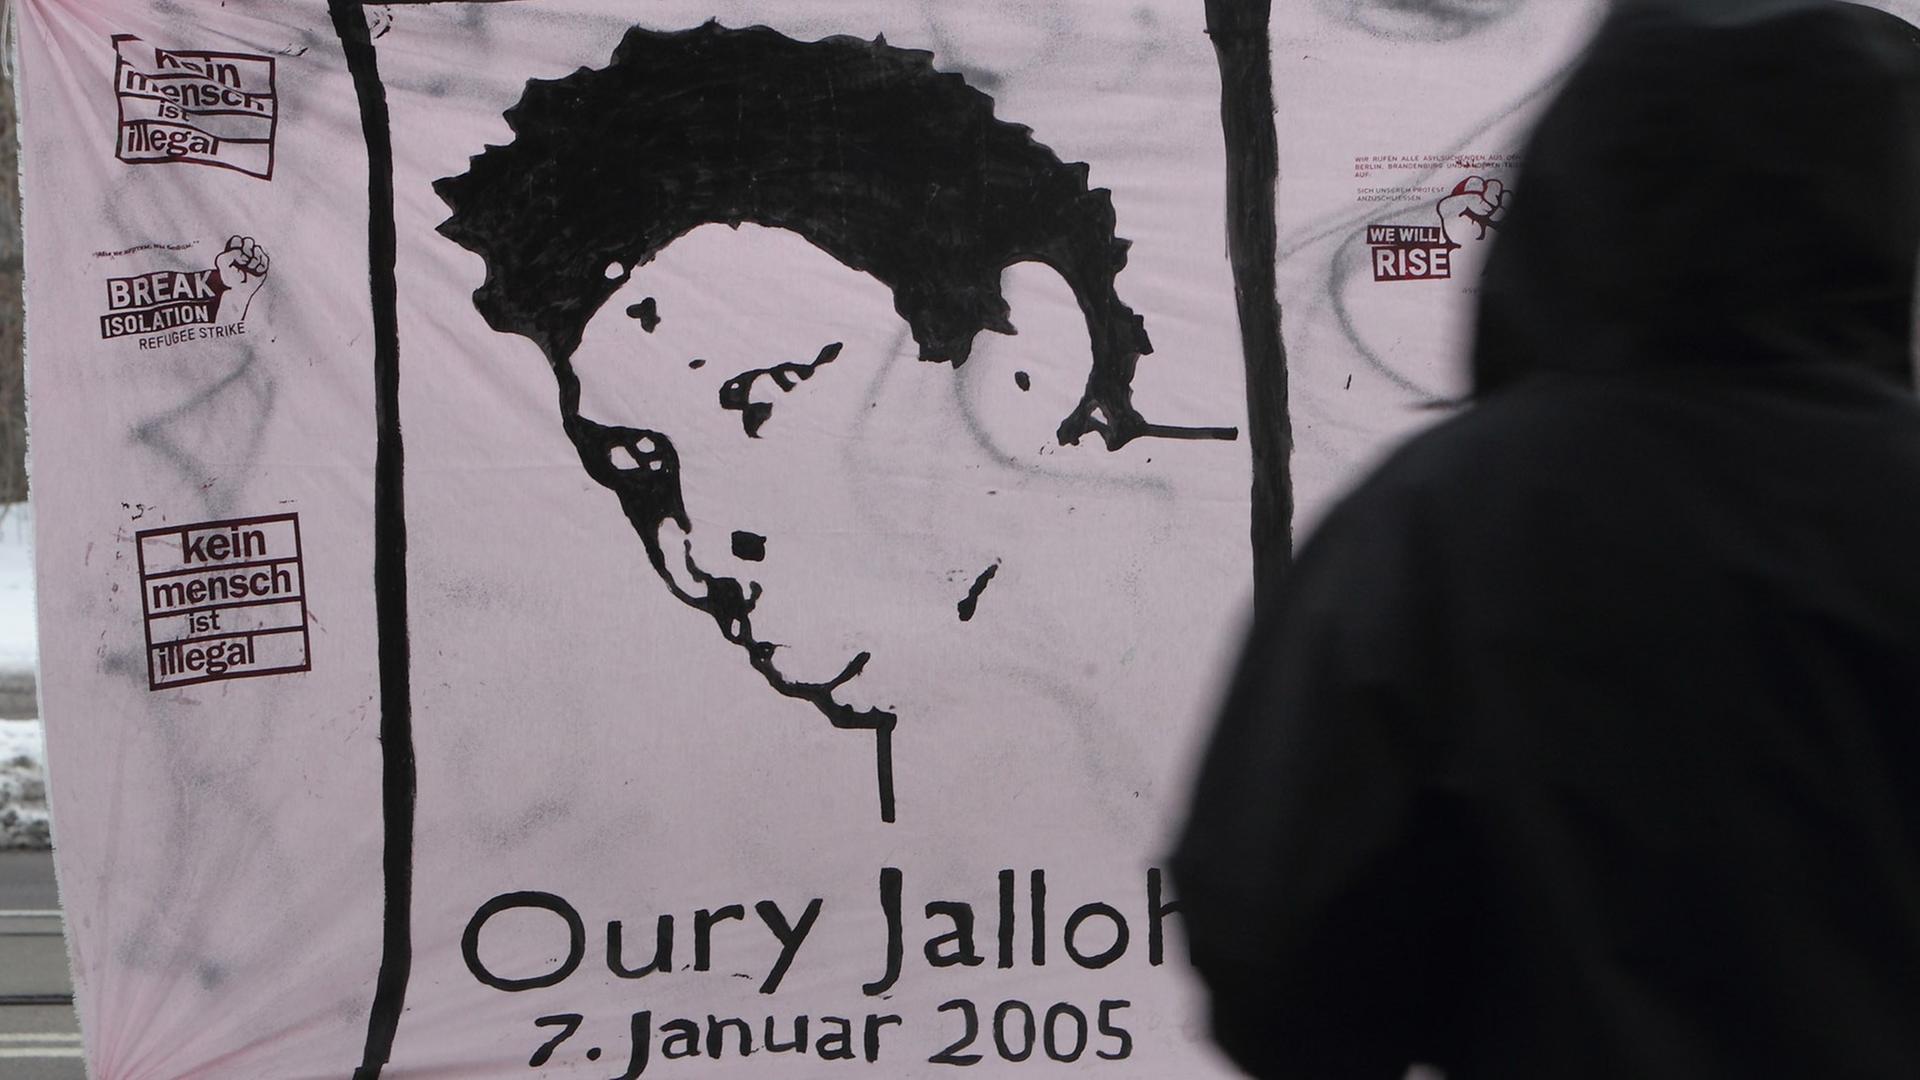 Transparent mit einem Porträt von Oury Jalloh